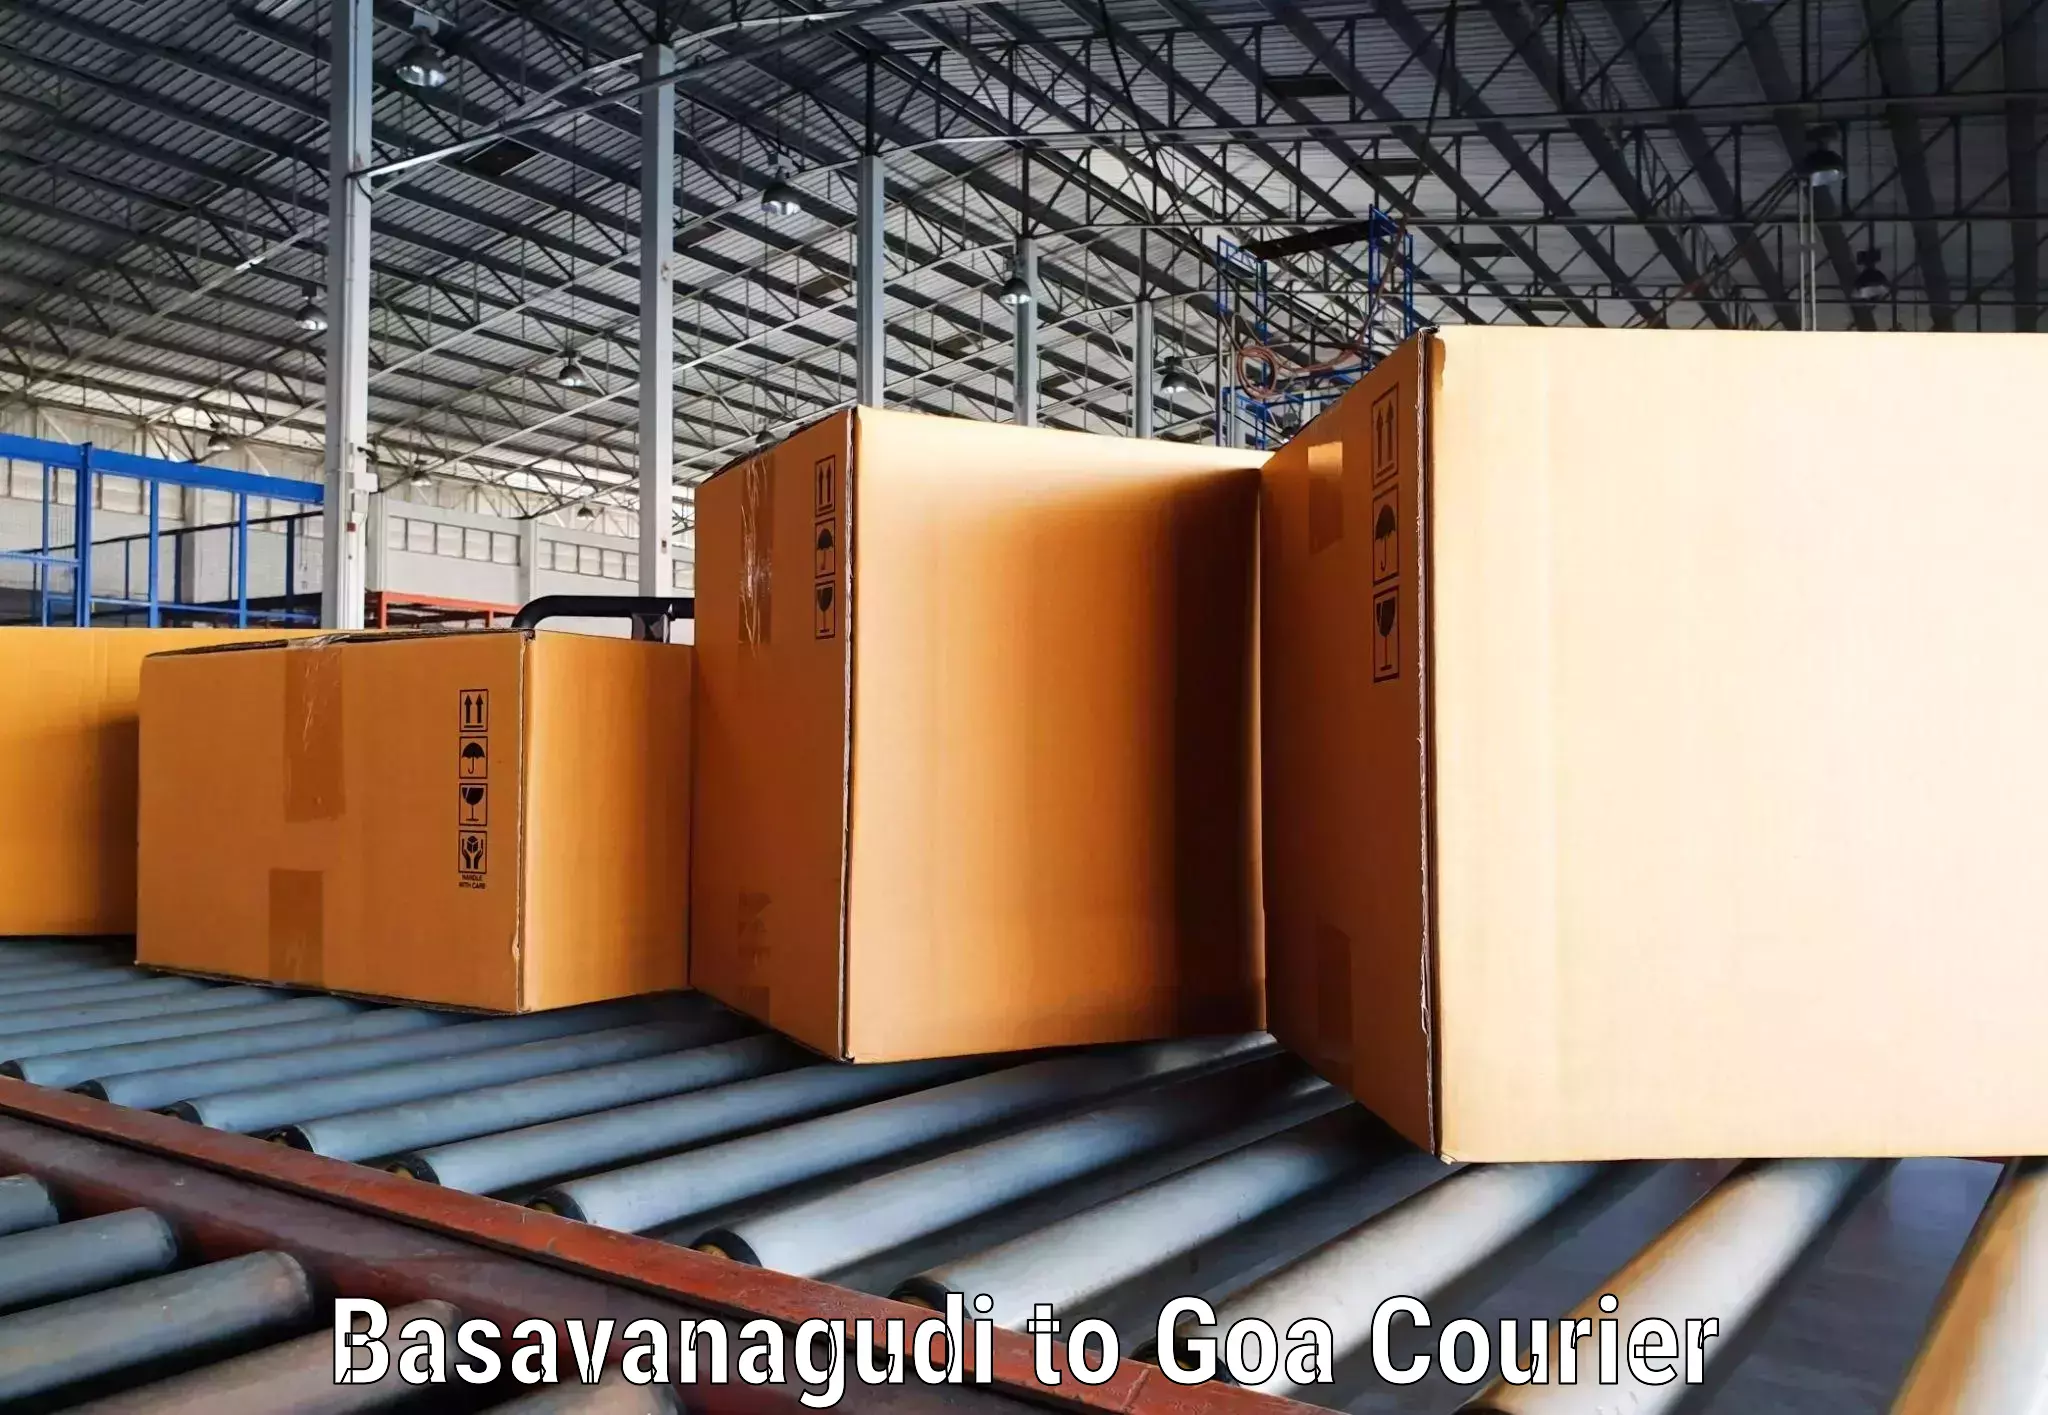 Nationwide shipping capabilities Basavanagudi to IIT Goa